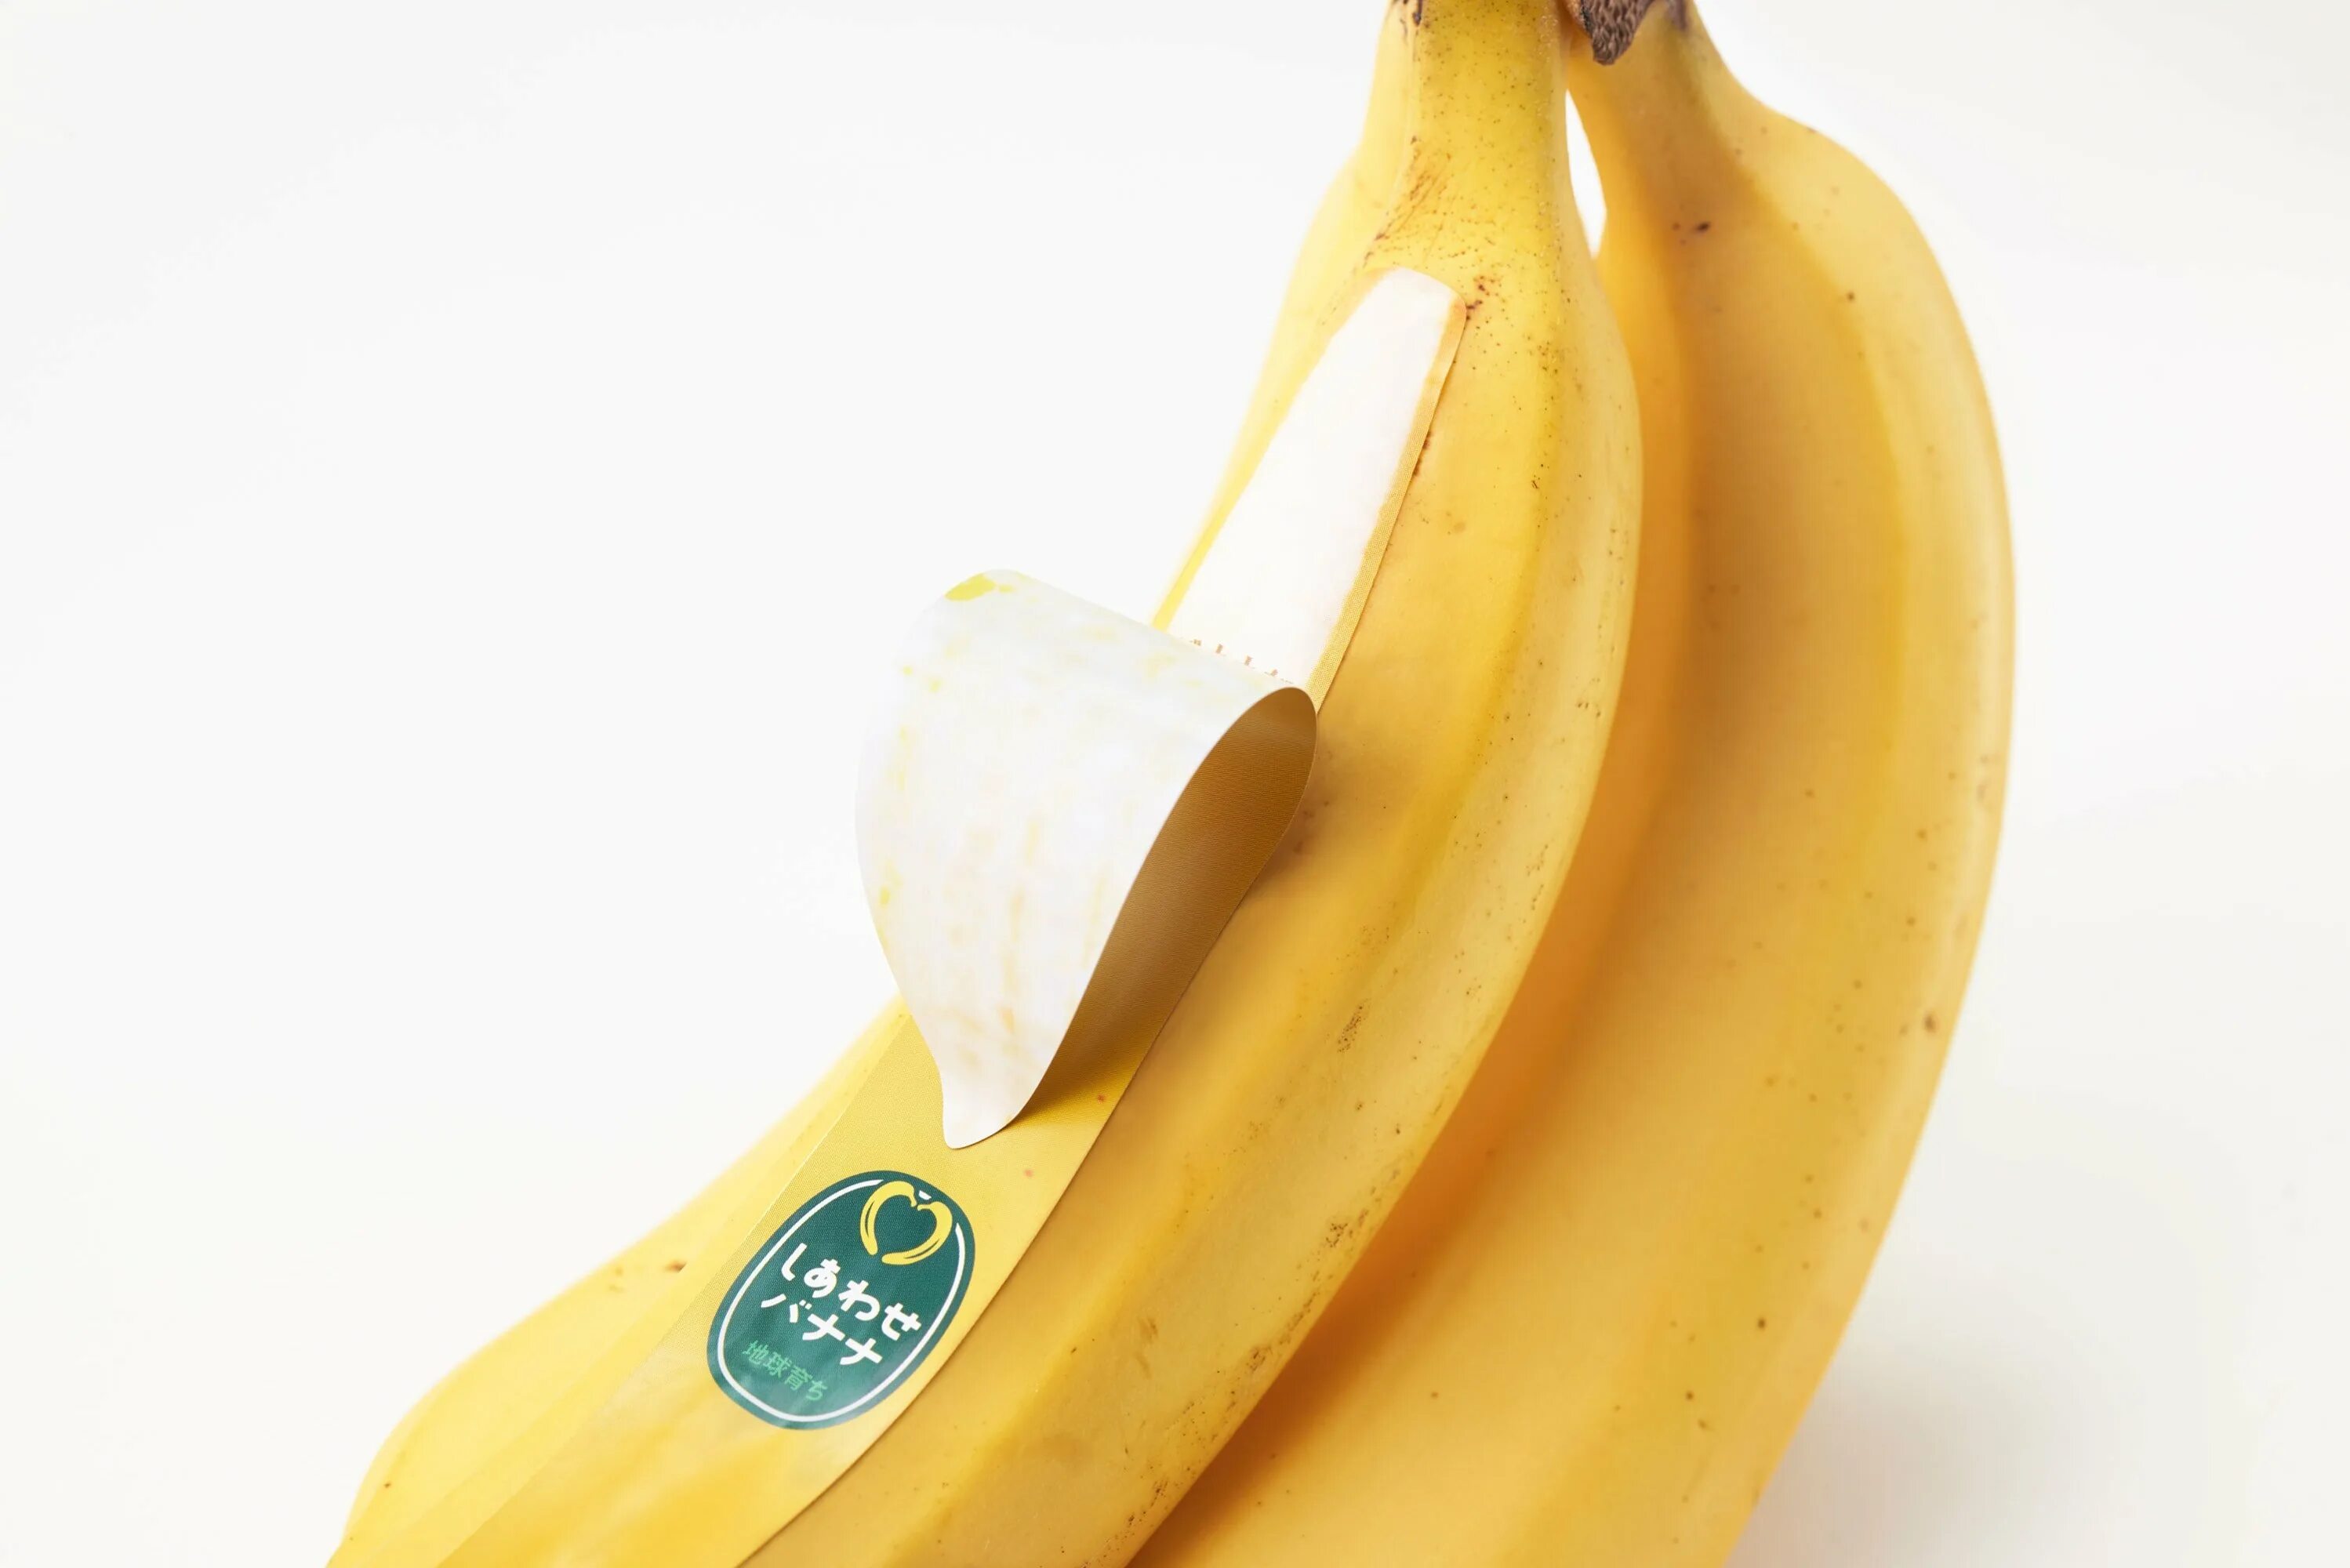 Где купить банан. Бананы в упаковке. Упаковка в виде банана. Банан японский. Упаковка бананов в Японии.